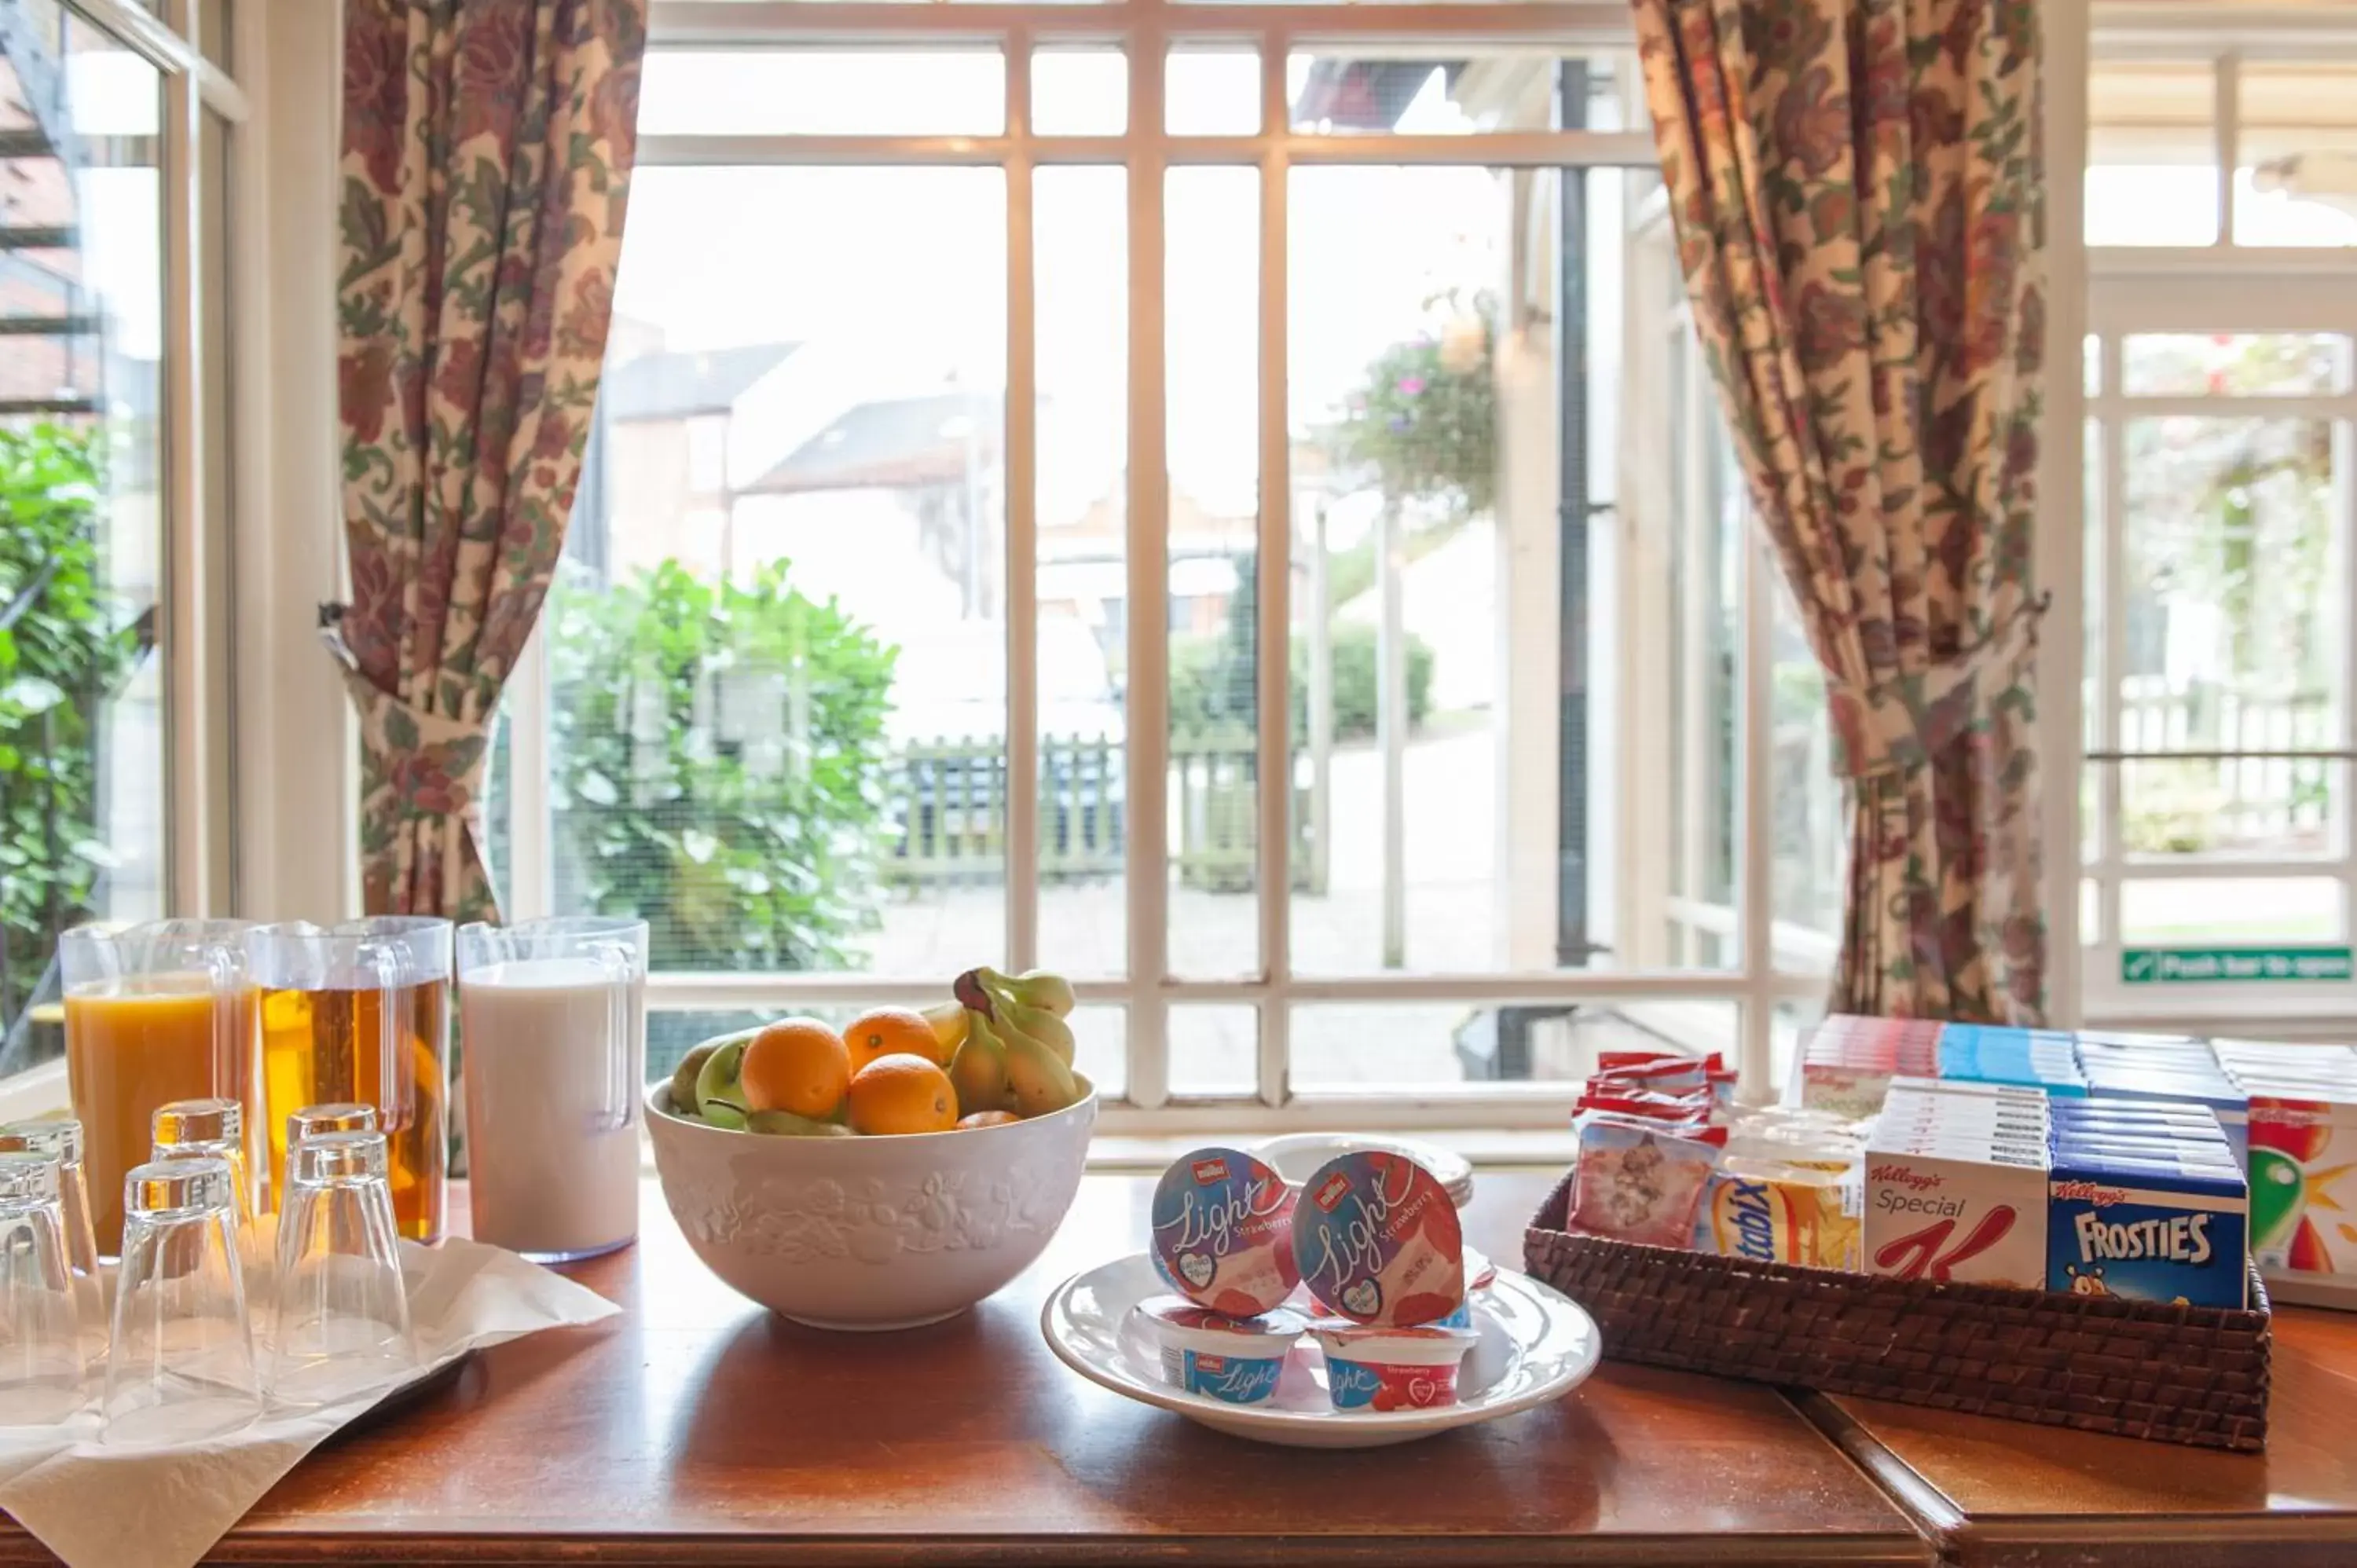 Buffet breakfast in Heart of England, Northampton by Marston's Inns